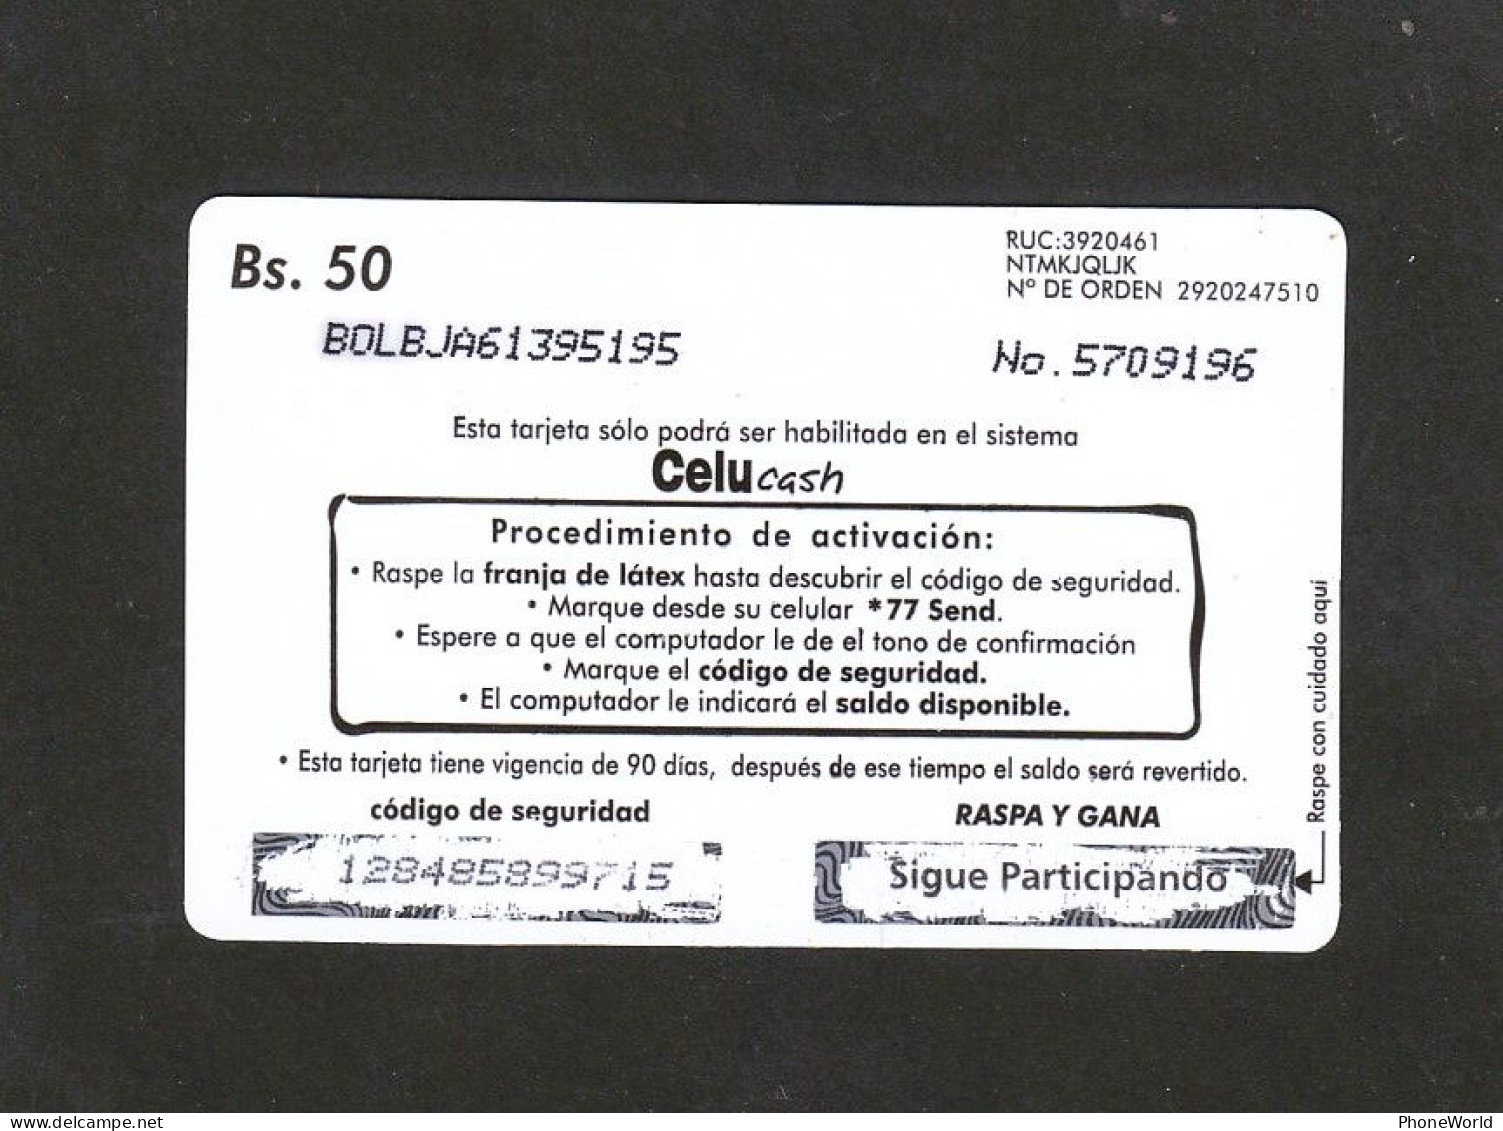 Bolivia, Telecel, Coca-cola Bs 50, (2 Scans)... Decembre 2001...RRRR - Bolivien